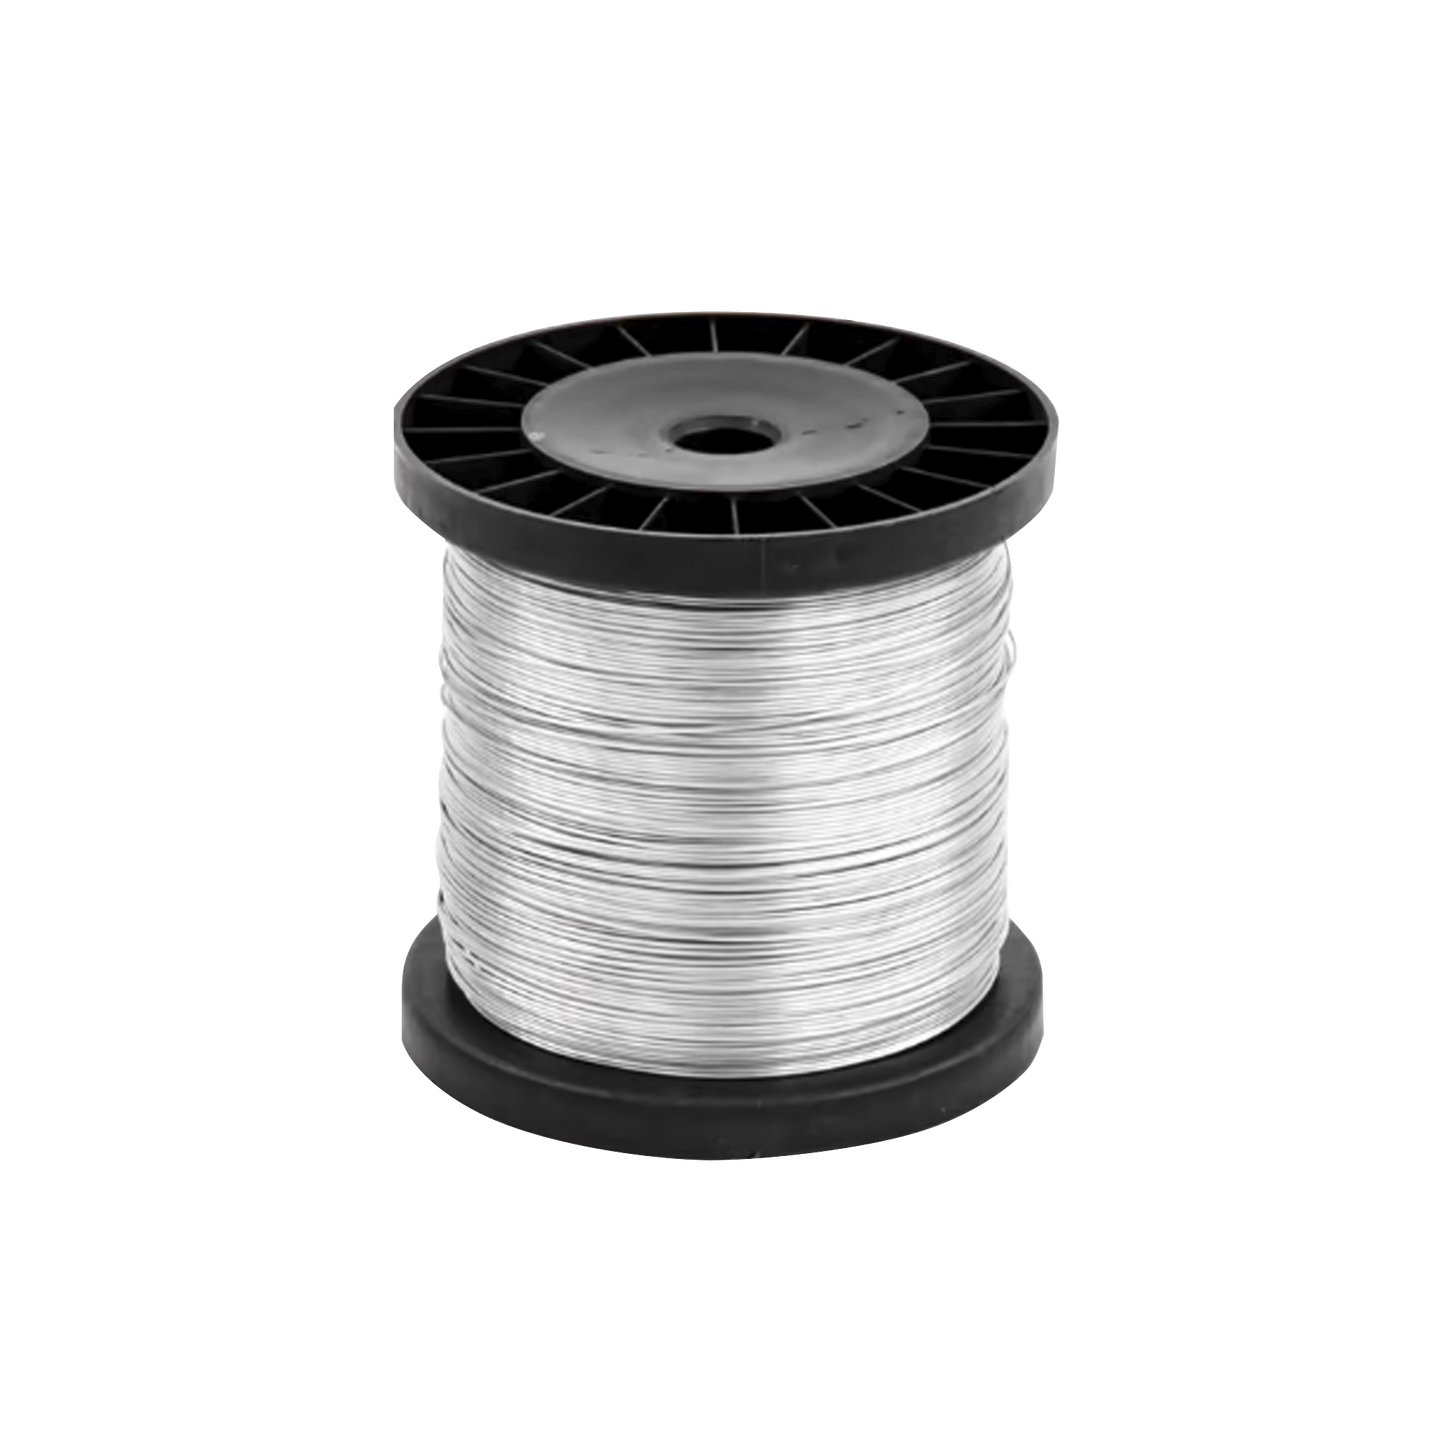 Cable De Aluminio Reforzado Para Intemperie Ideal Para Cercas Electrificadas Calibre 16 - 500Mts